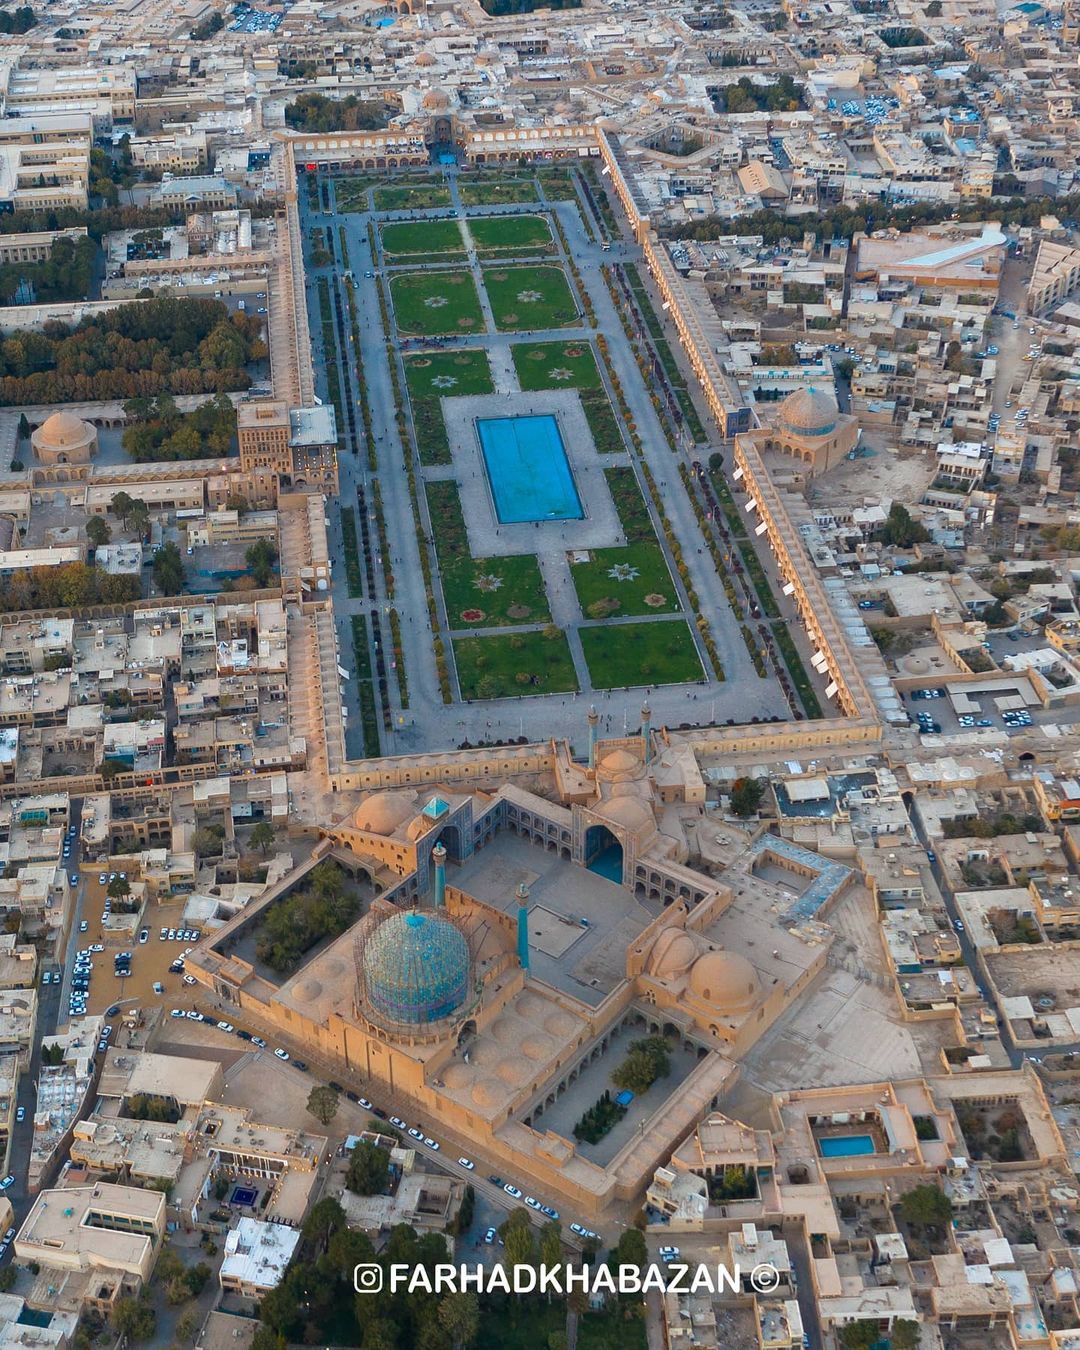                                                    نمایی هوایی از نقش جهان اصفهان                                       